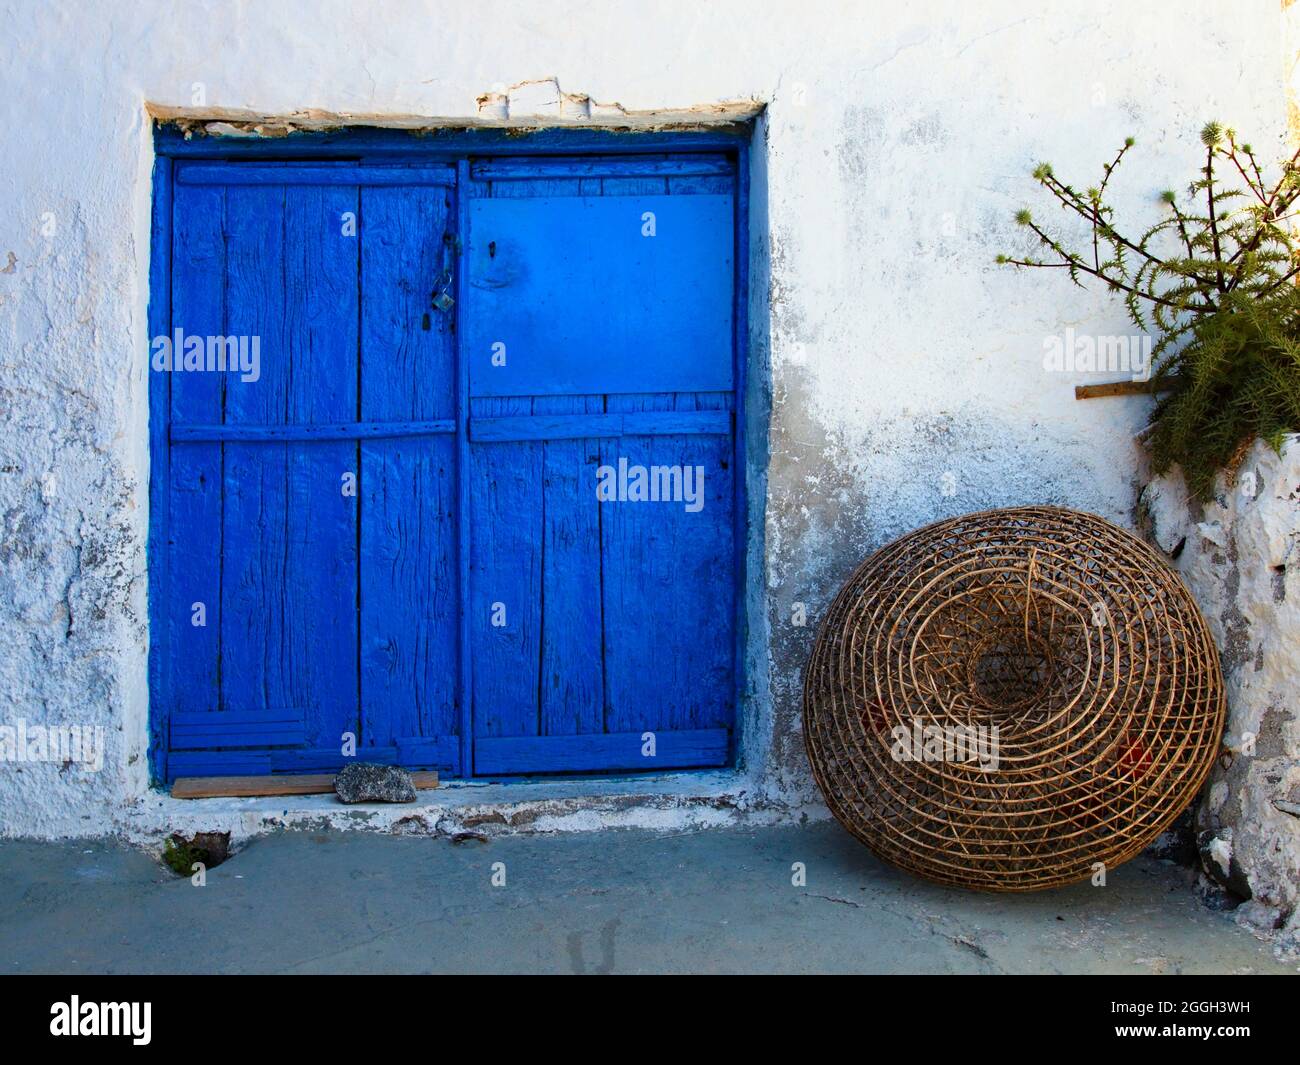 Maison de pêcheur et piège sur l'île de Santorin dans la mer Égée dans le sud de l'archipel des Cyclades en Grèce. Banque D'Images